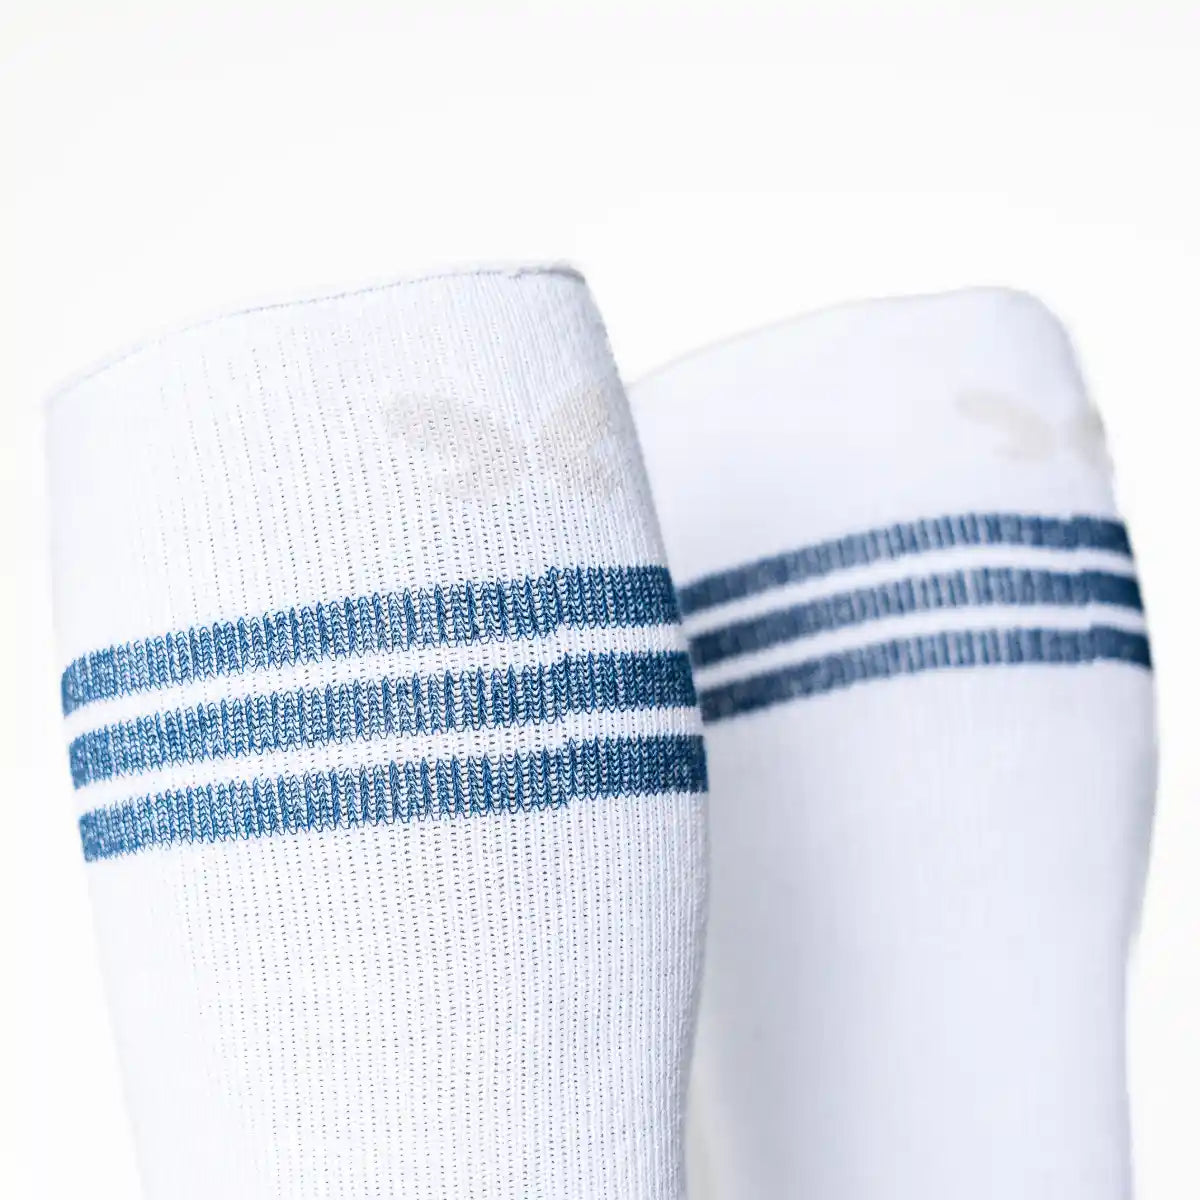 Calcetín compresivo de algodón alto, estilo vintage retro. Color blanco con 3 rayas azules